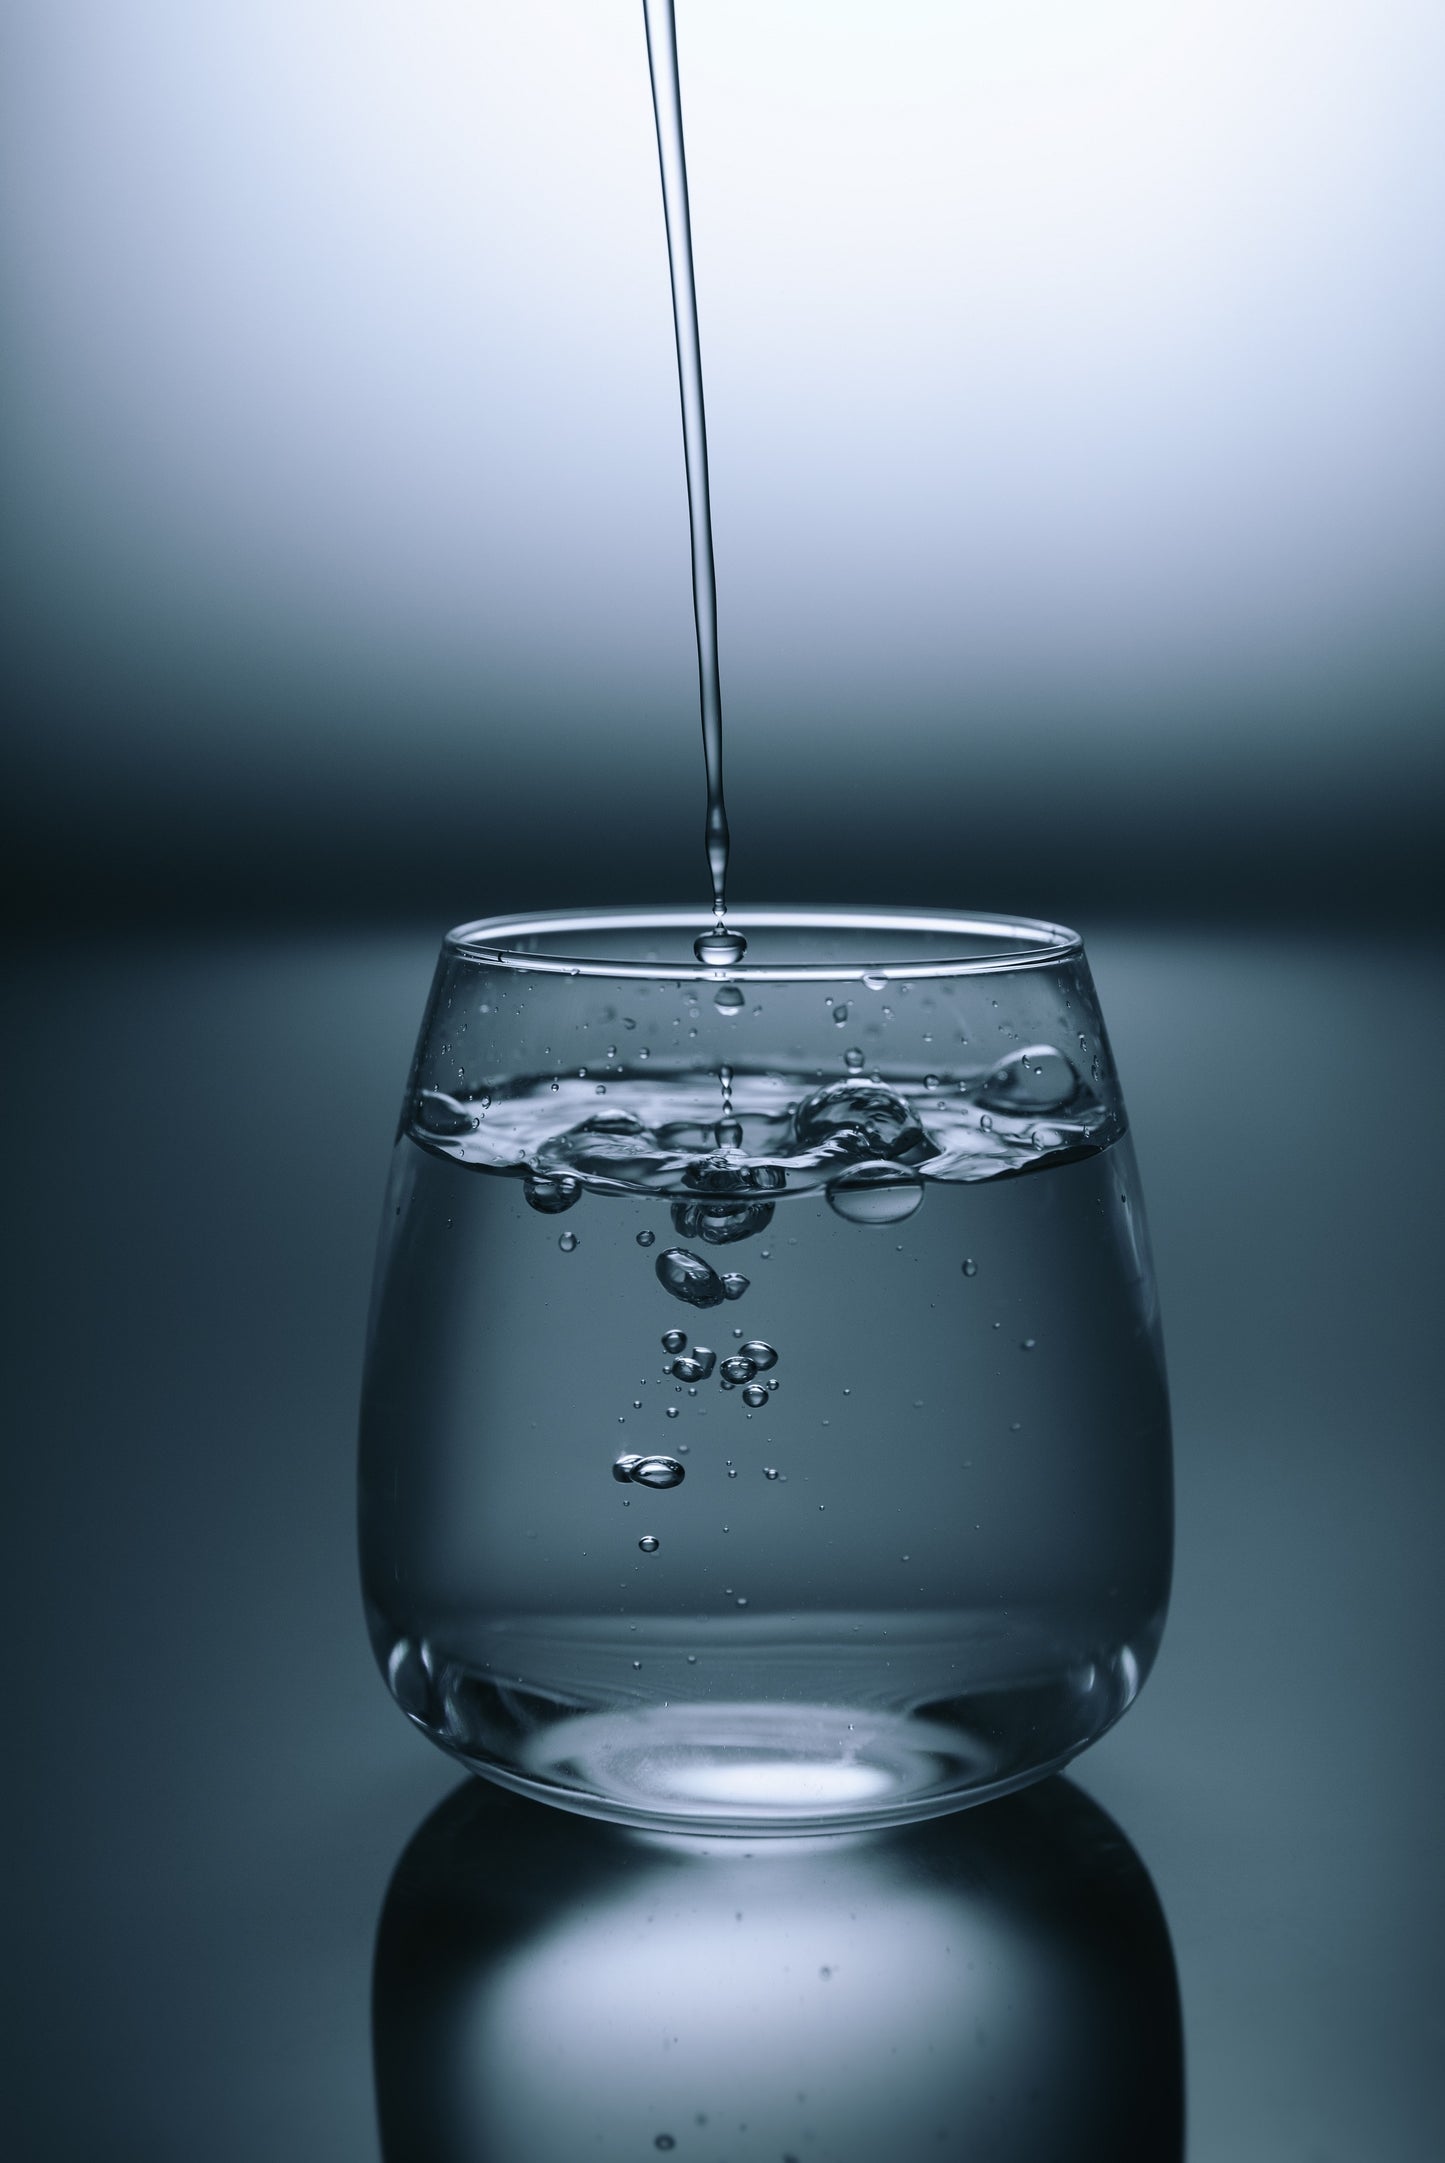 ZAGORI Mineralwasser stilles Wasser 1 Liter Glasflasche